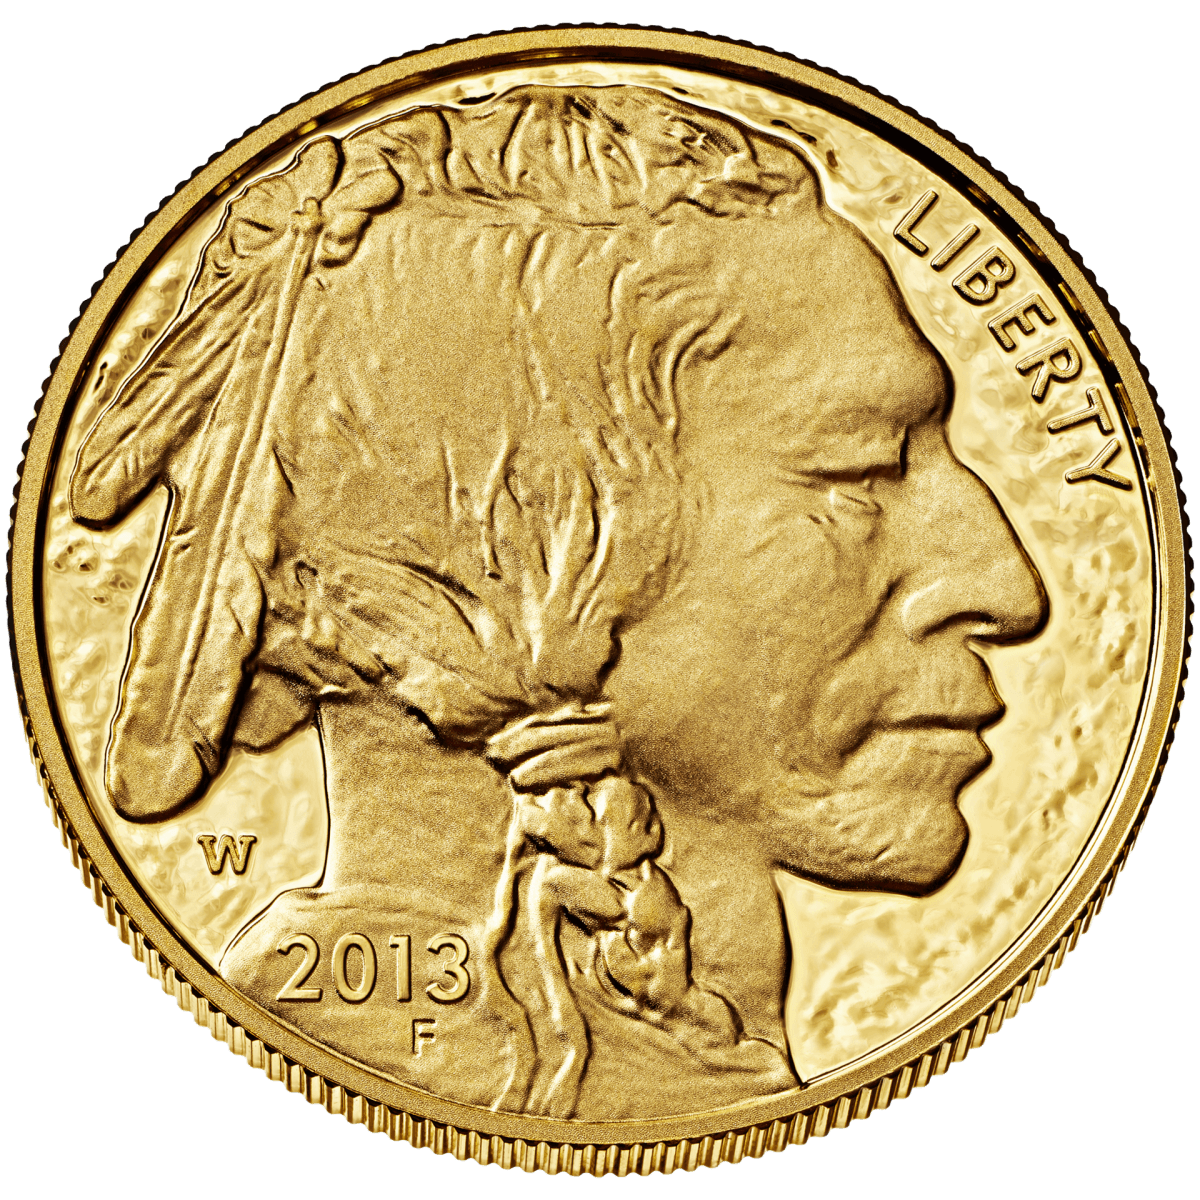 American gold buffalo $50 coin obverse